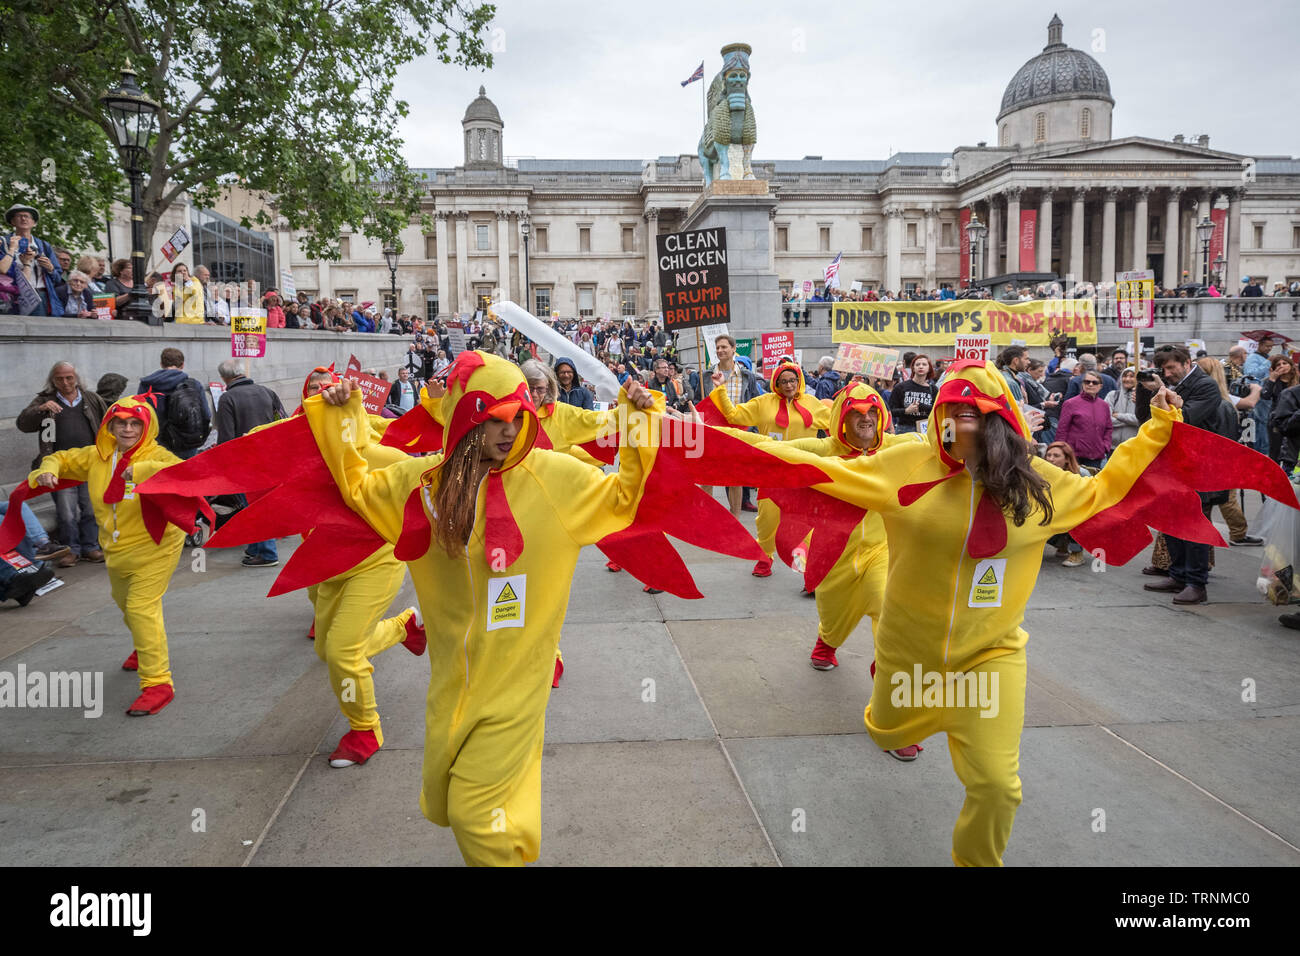 Les spectacles de danse de poulet chloré à Trafalgar Square dans le cadre des manifestations contre le président américain, Donald Trump's UK visite d'état. Banque D'Images